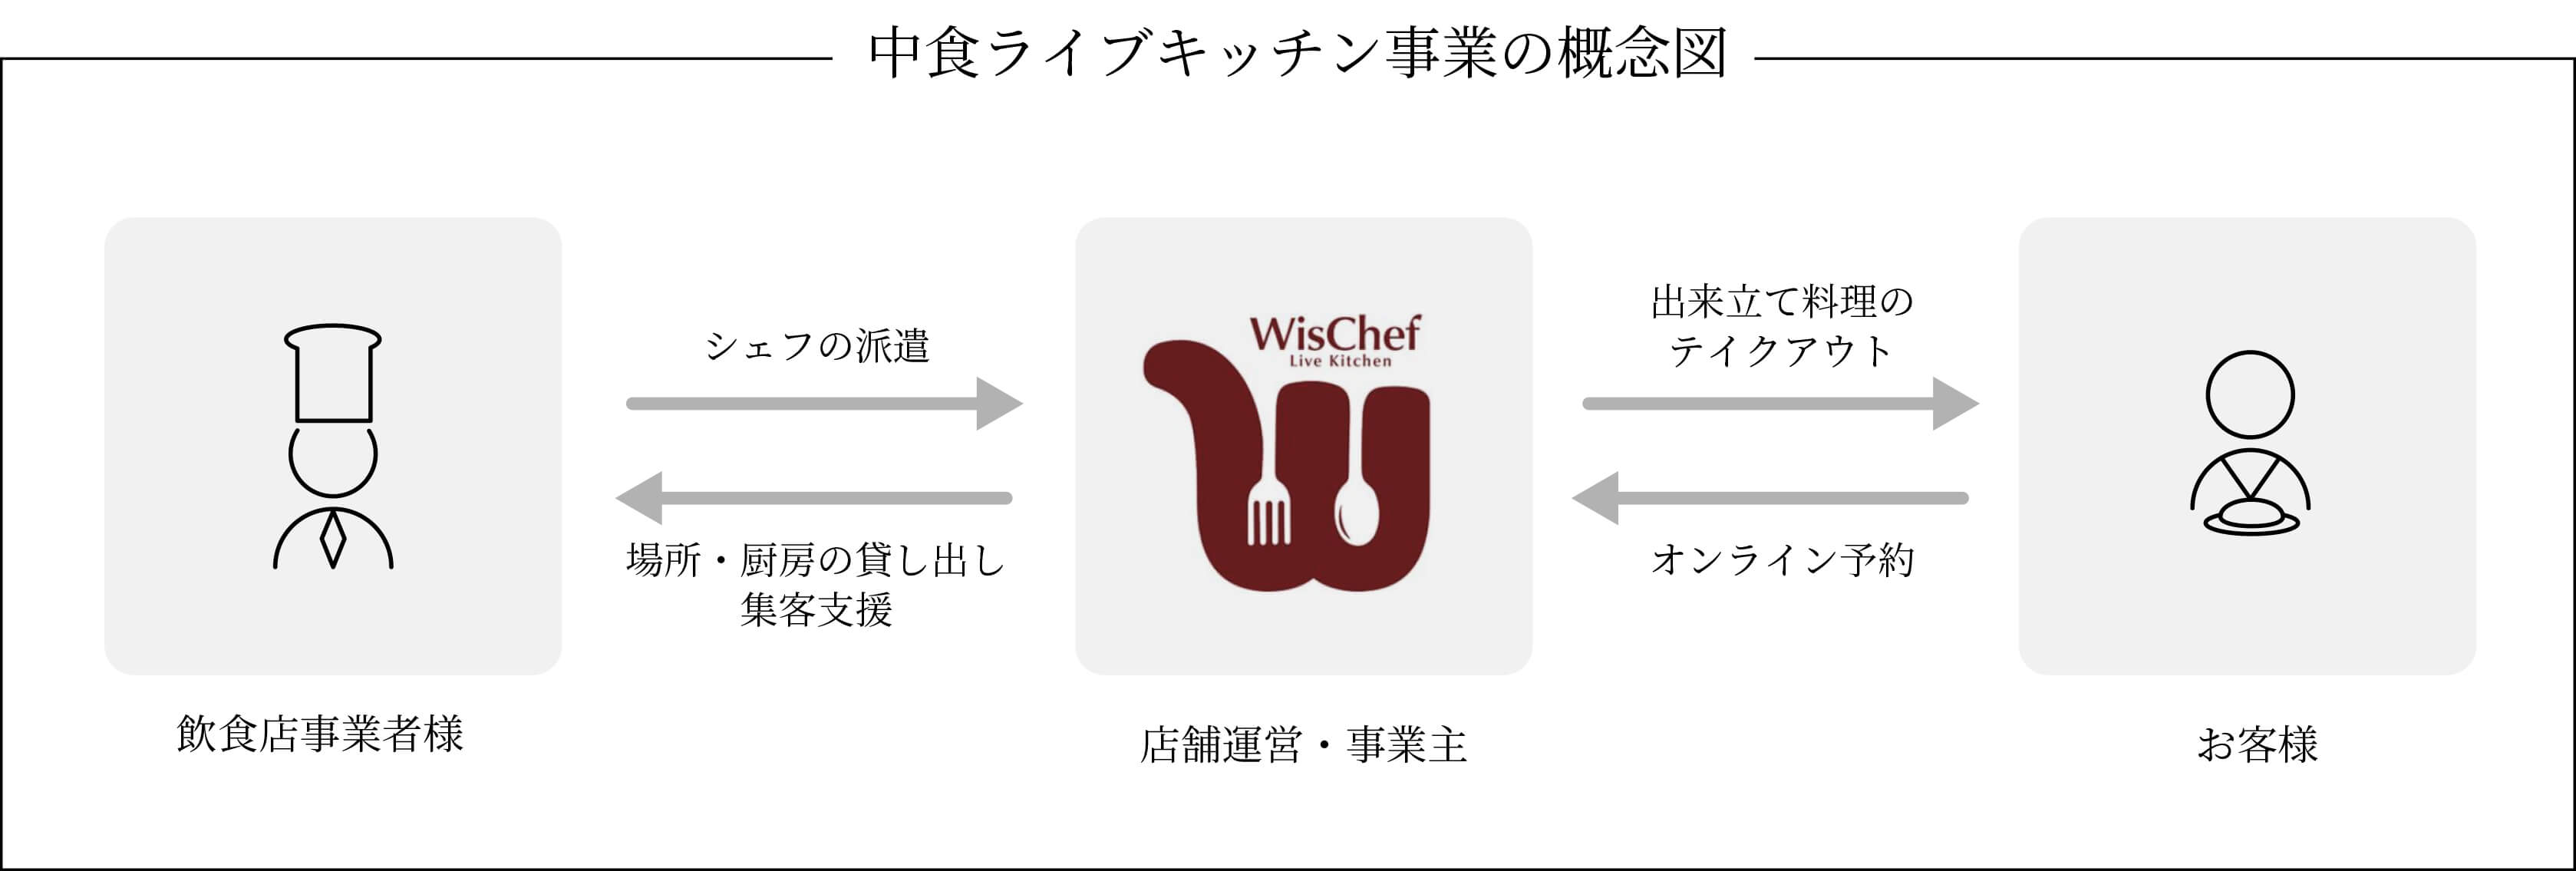 中食ライブキッチン事業の概念図